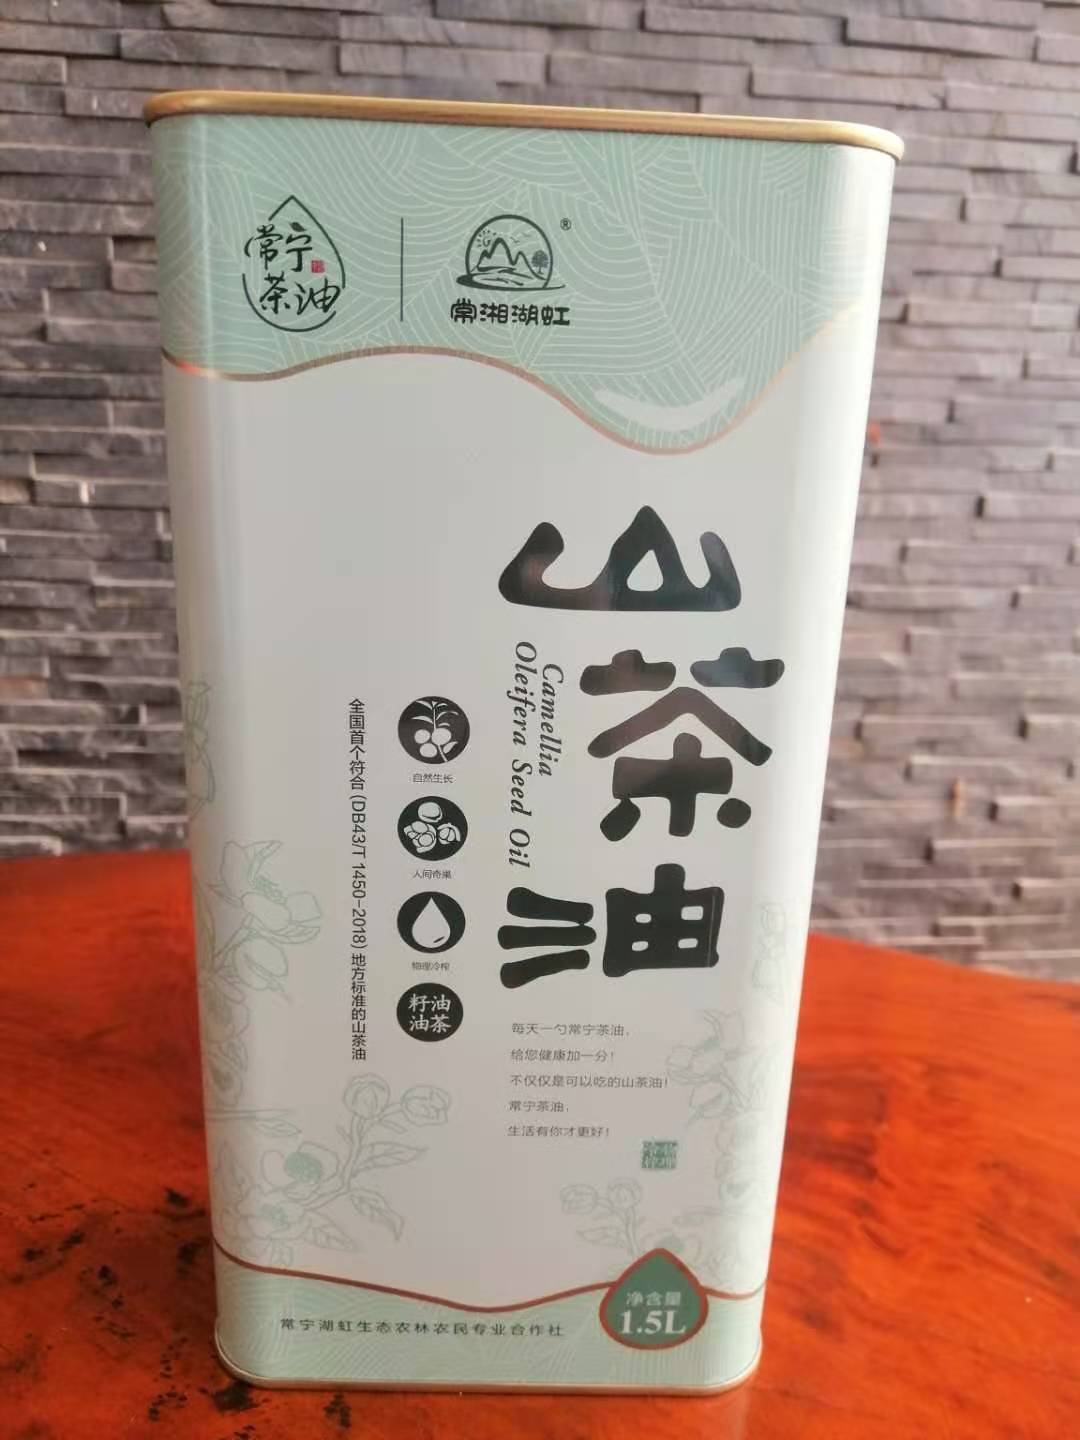 贵州玉屏山茶油铁桶 贵州茶油铁罐包装定制